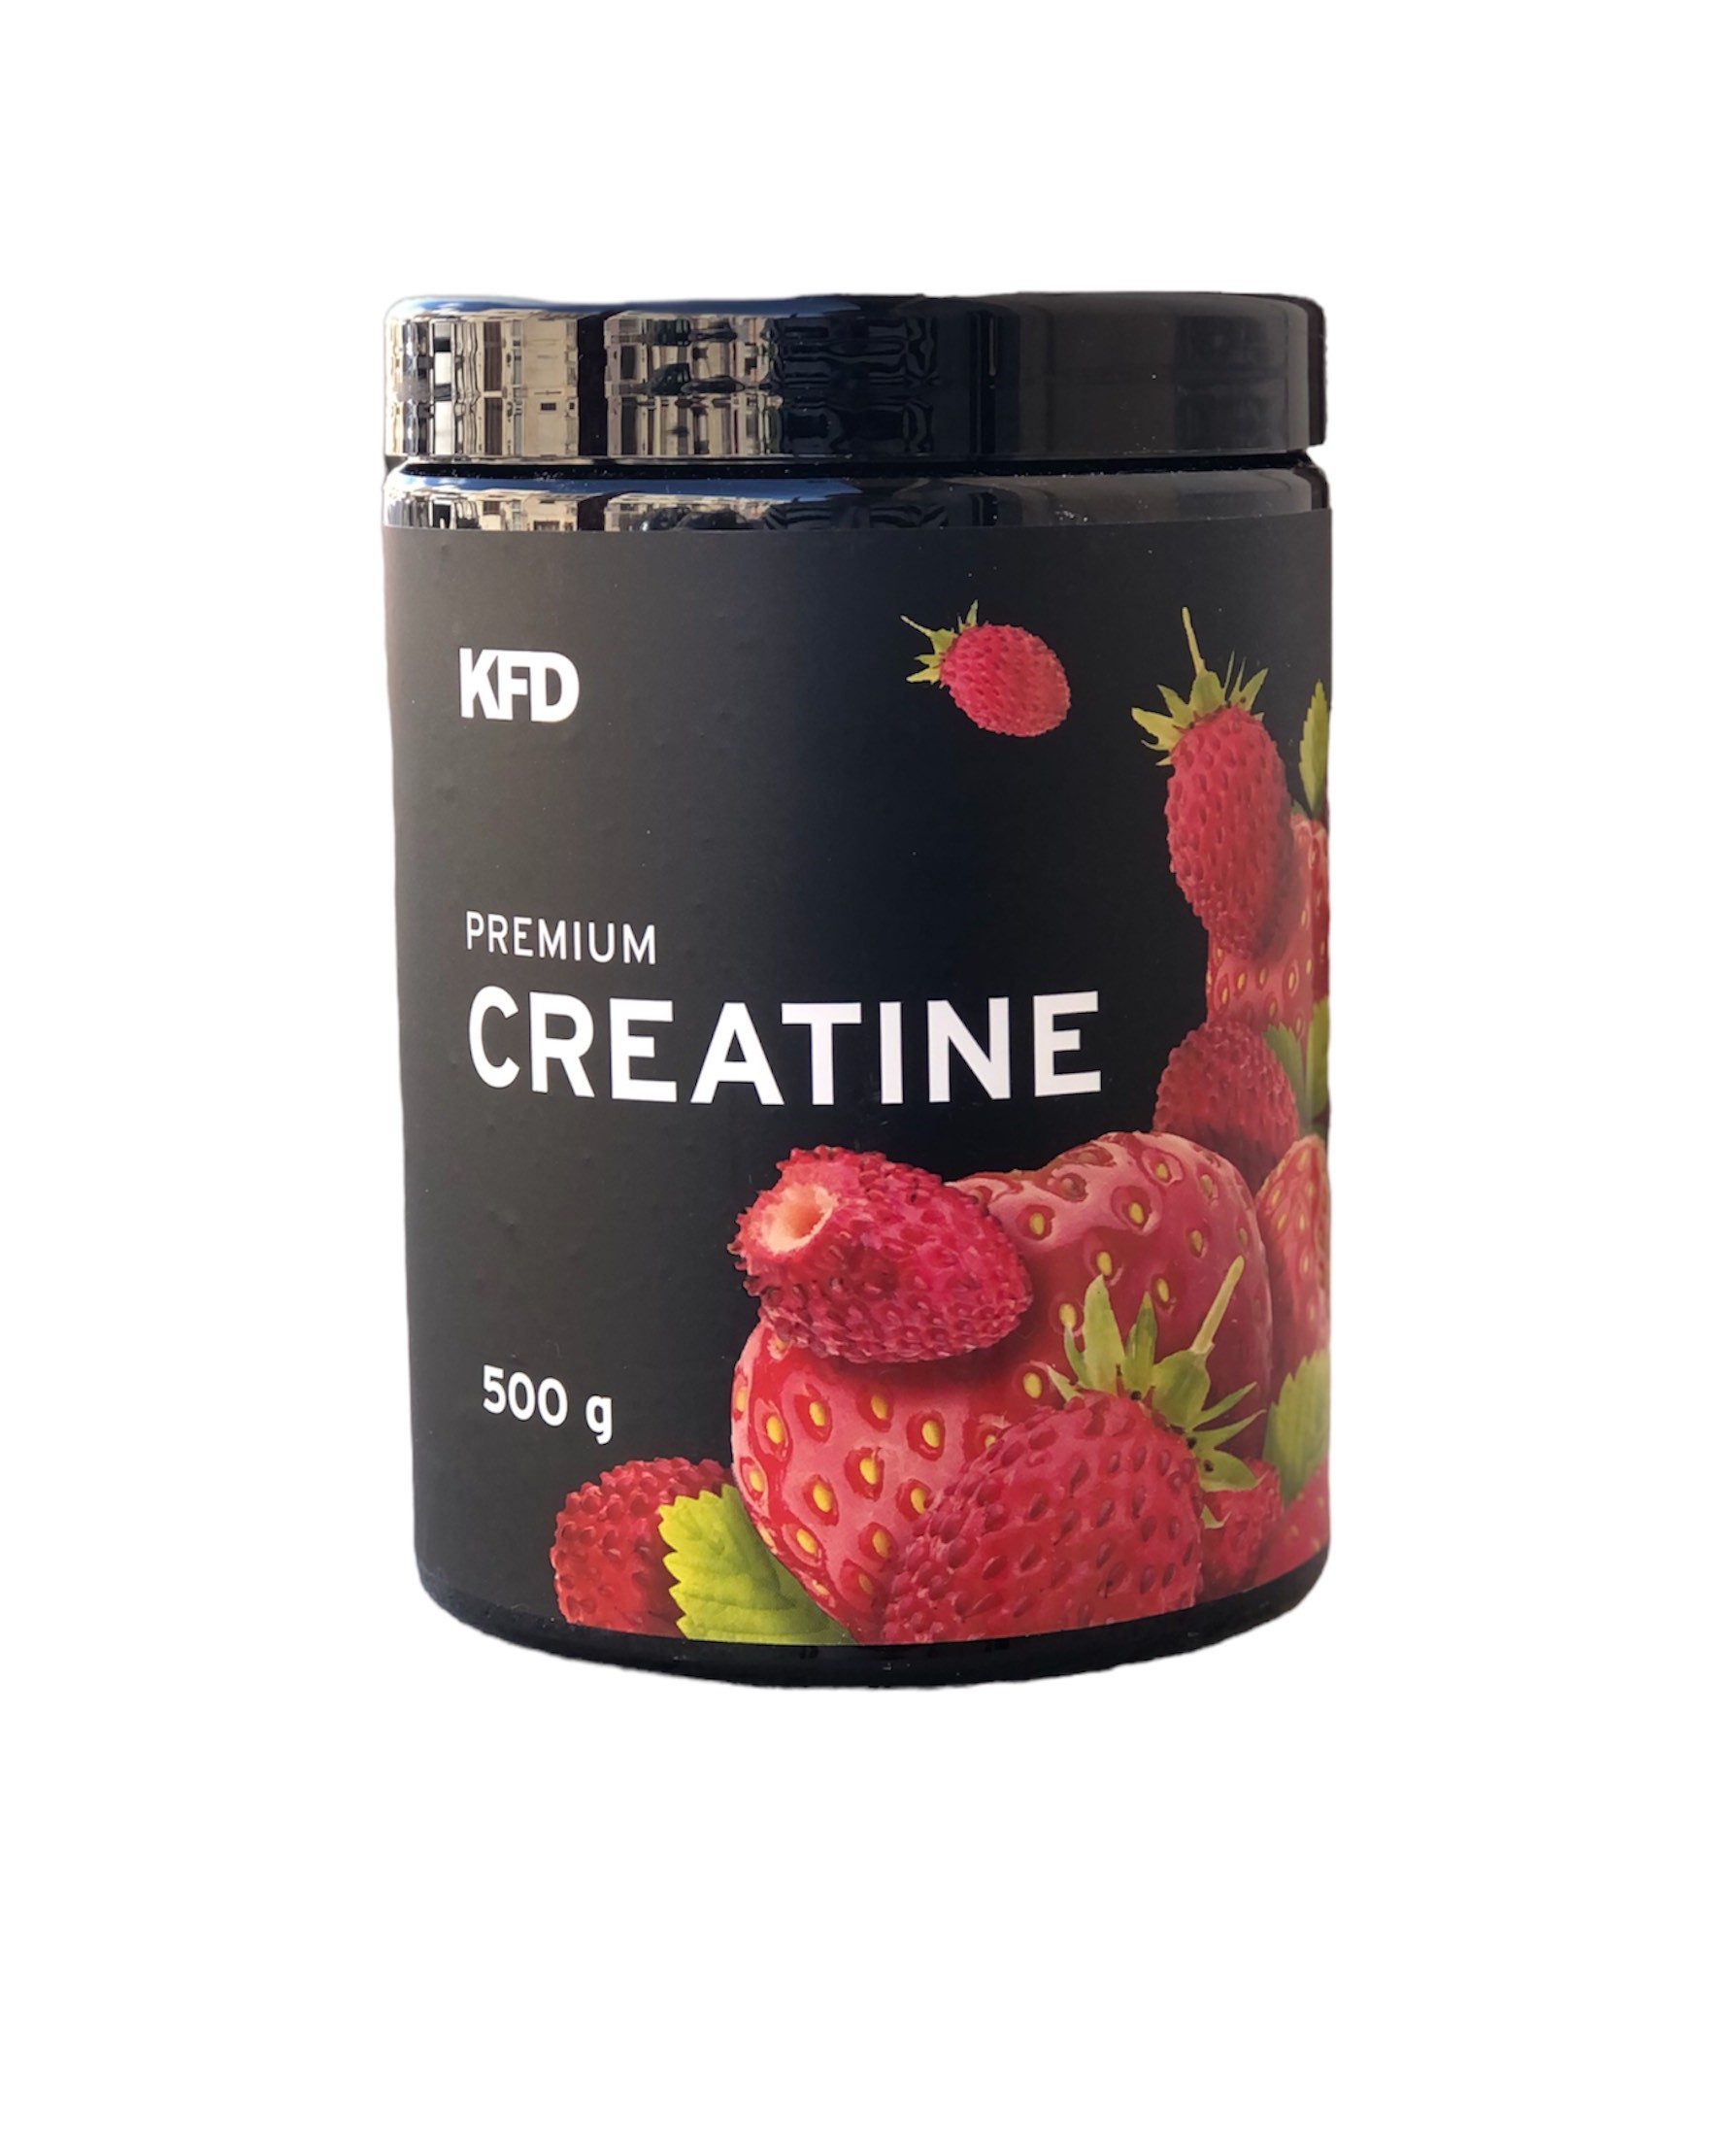 KFD Premium Creatine Strawberry